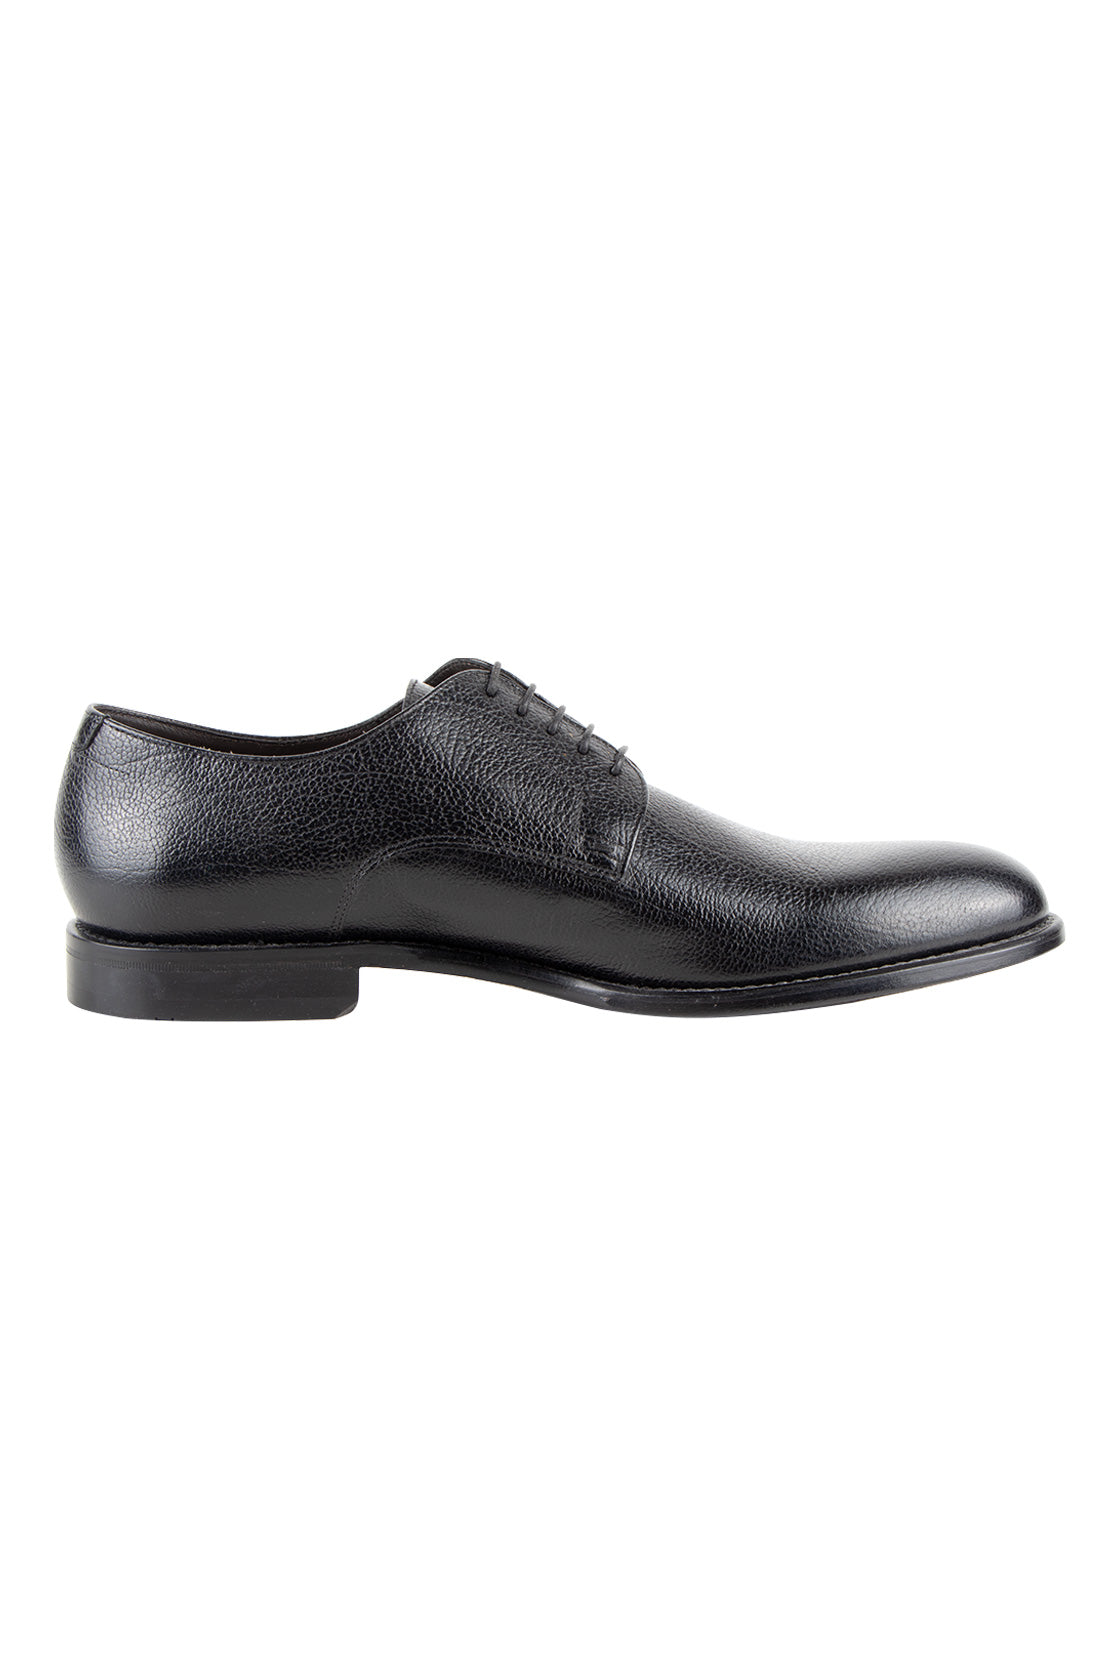 Hugo Boss Stadelam Derby Shoe Black